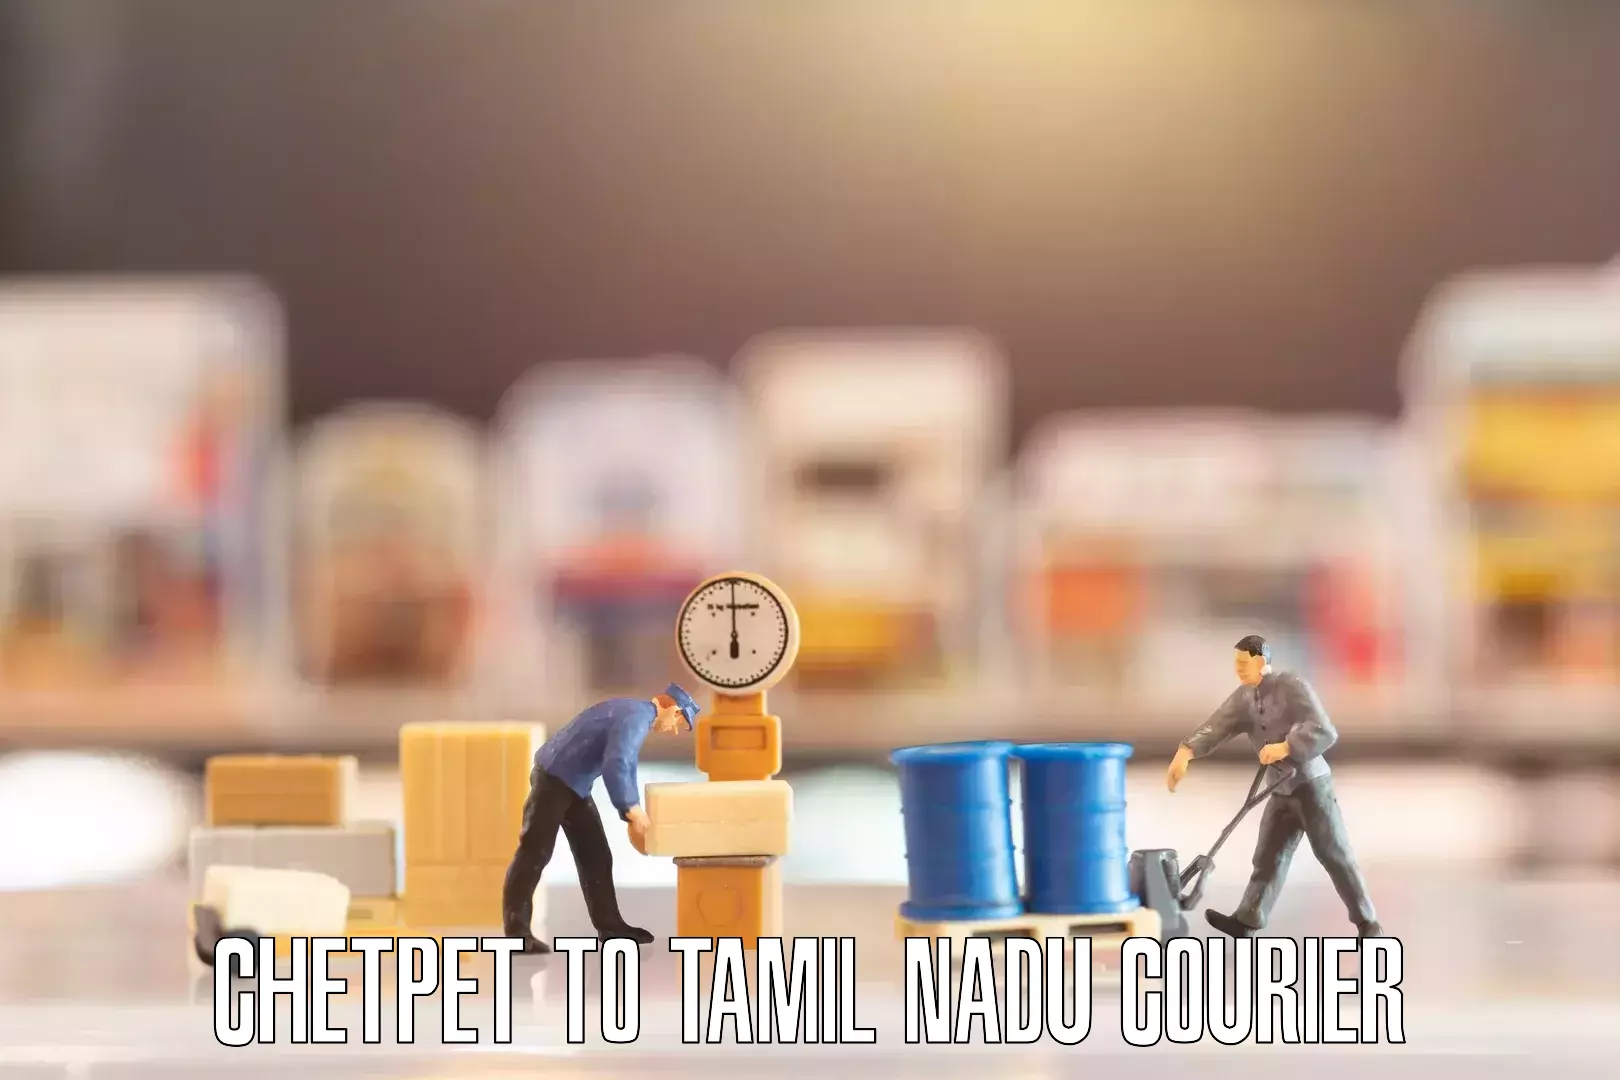 Online household goods transport Chetpet to Tamil Nadu